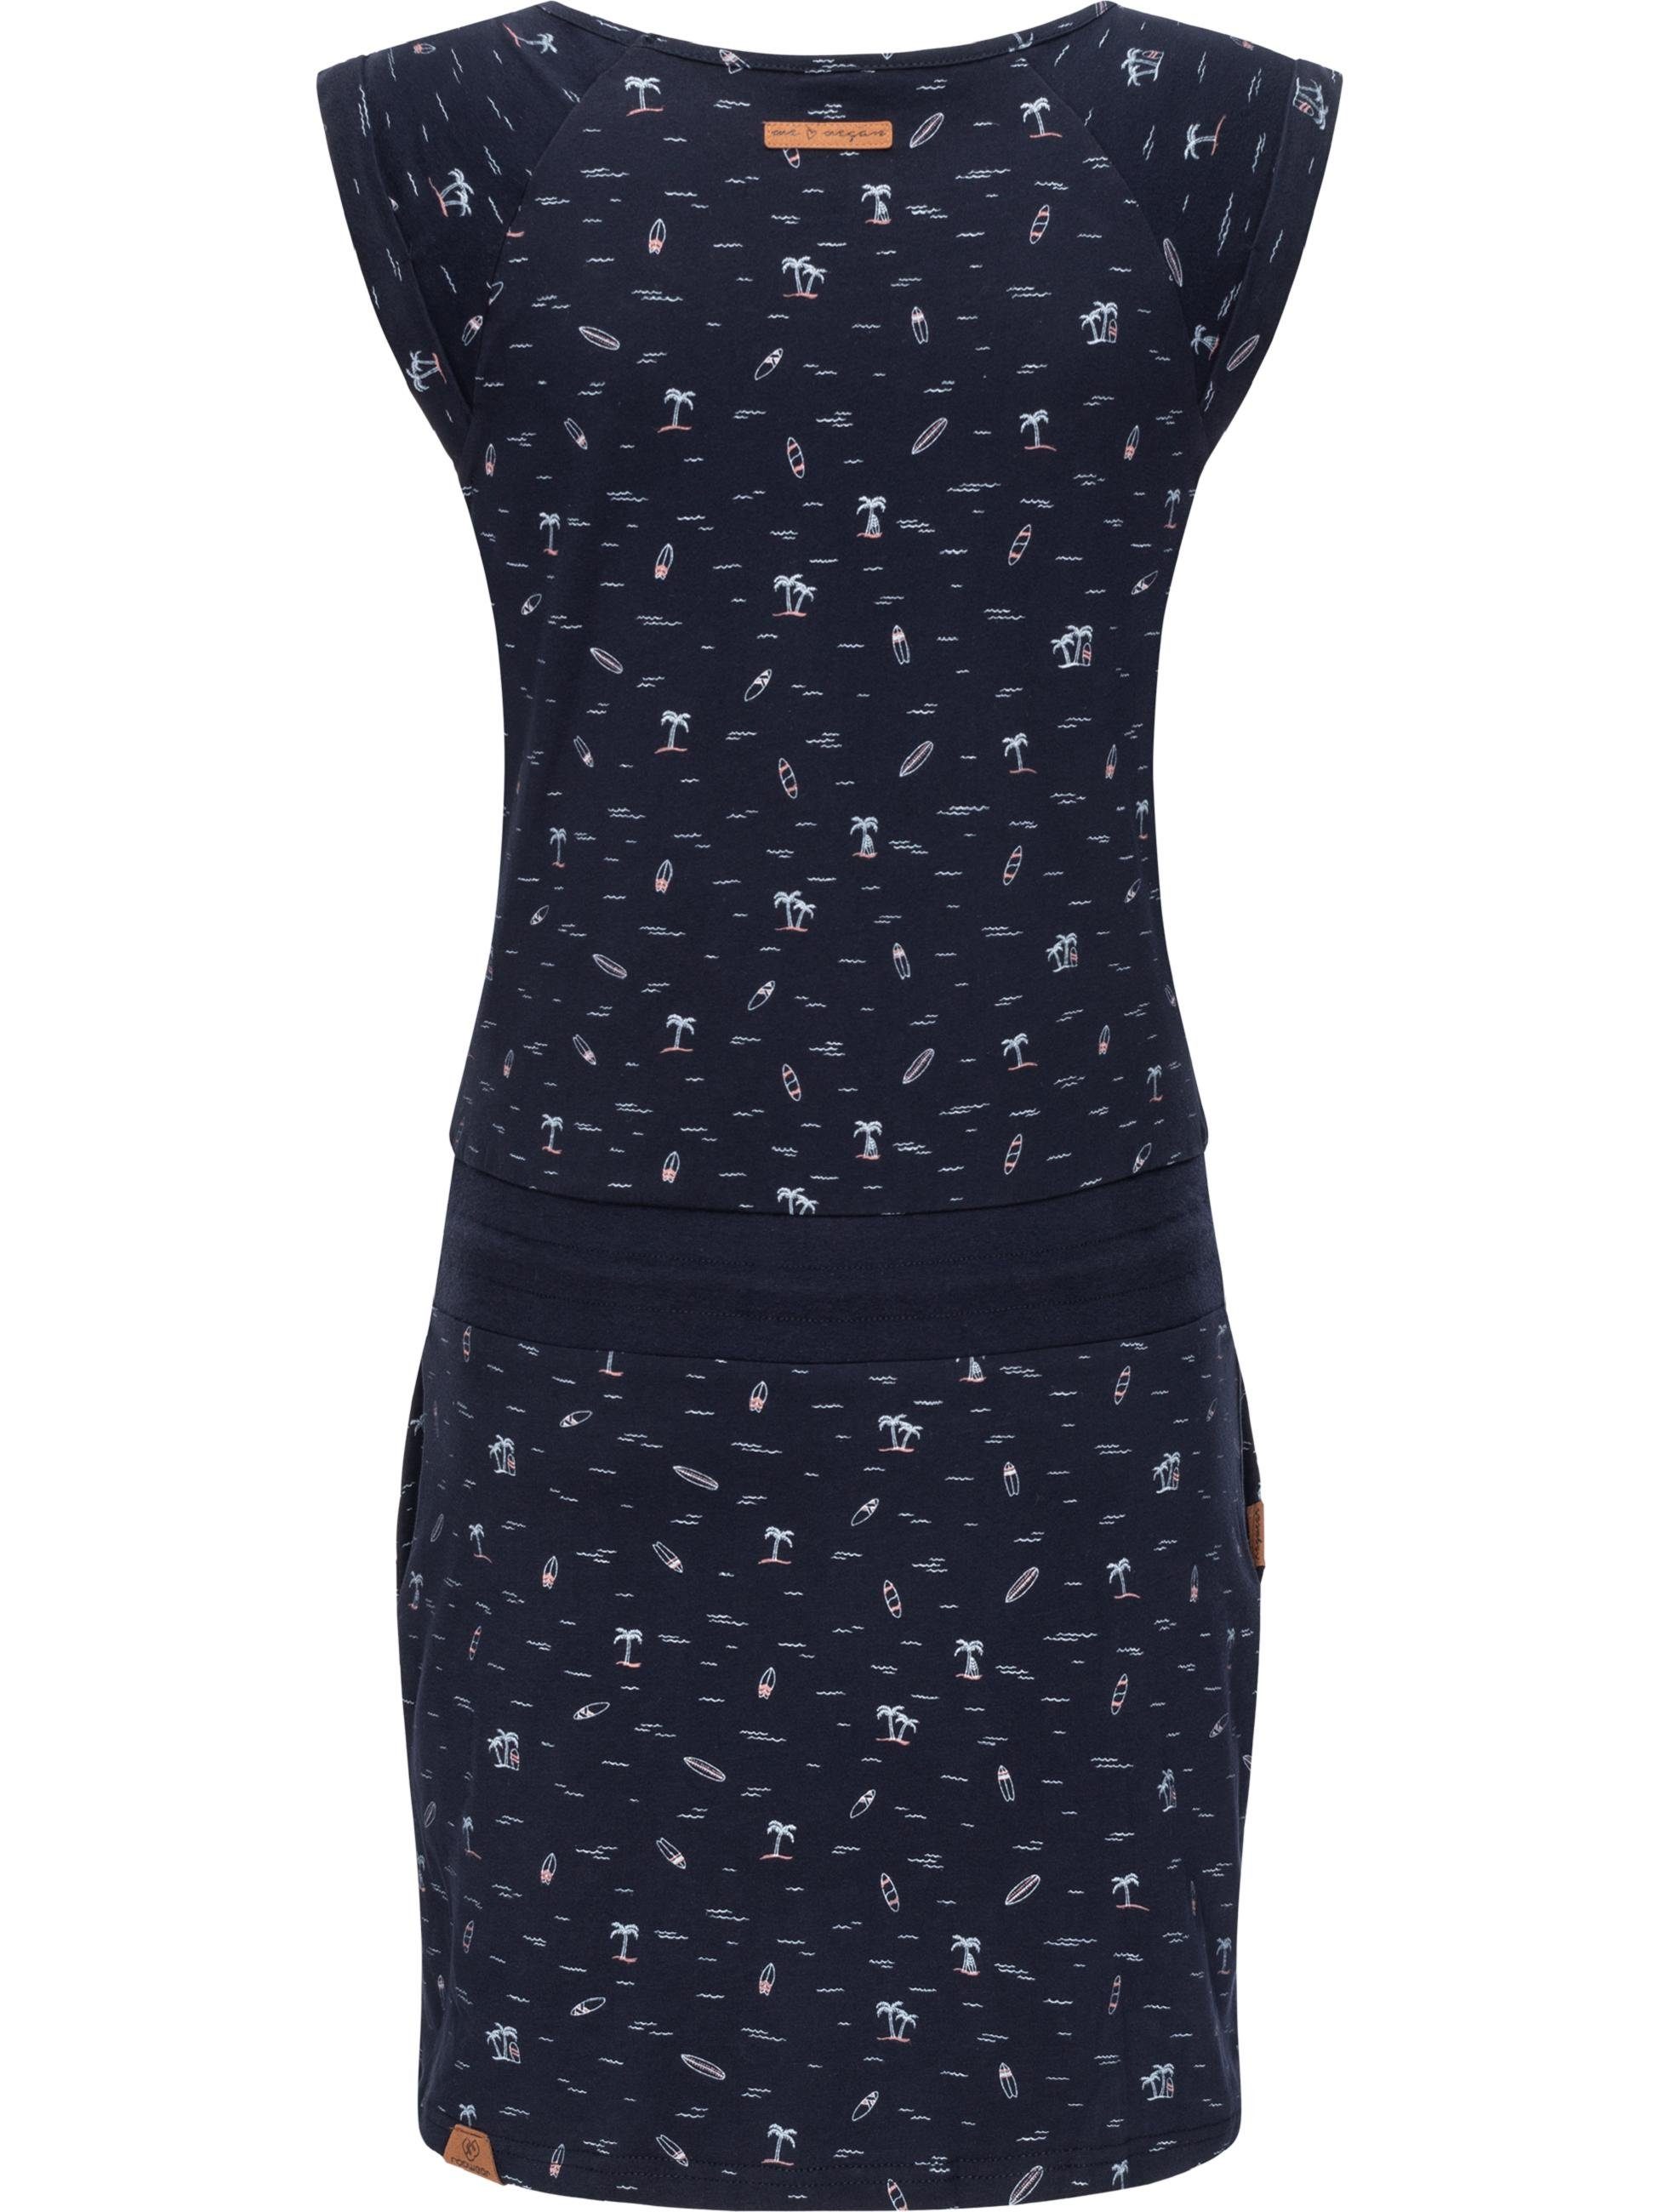 Ragwear Sommerkleid Penelope leichtes Baumwoll Hochwertige Verarbeitung Print, u. hergestellt Kleid vegan 100% mit Qualität